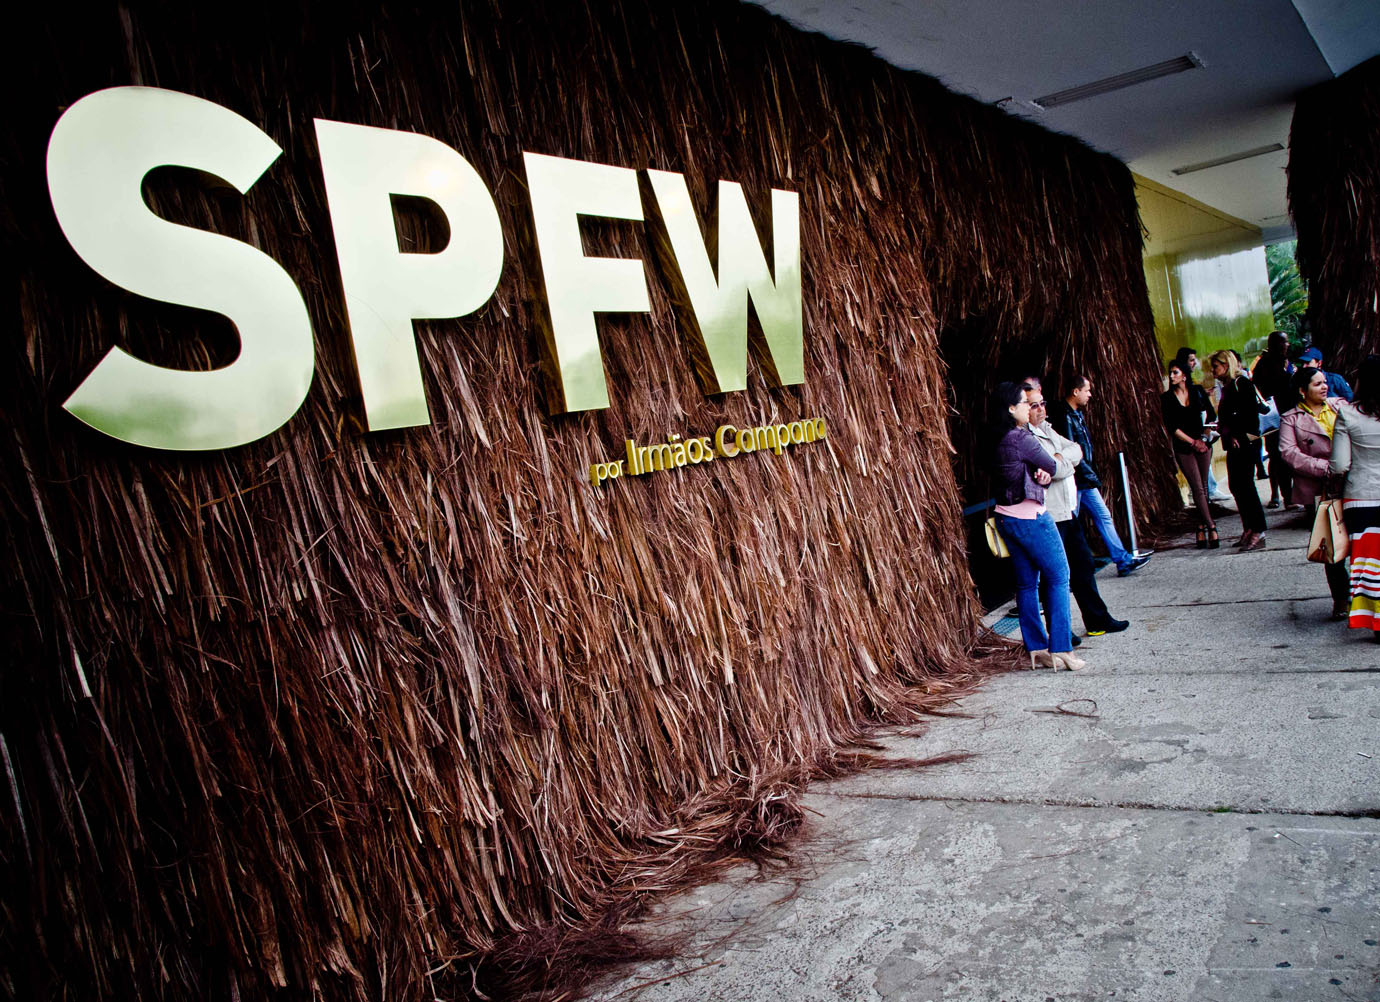 moda | semanas de moda | verão 2014 | SPFW | São Paulo Fashion Week verão 2014 | marcas nacionais | marcas que desfilam no SPFW | cenário do SPFW verão 2014